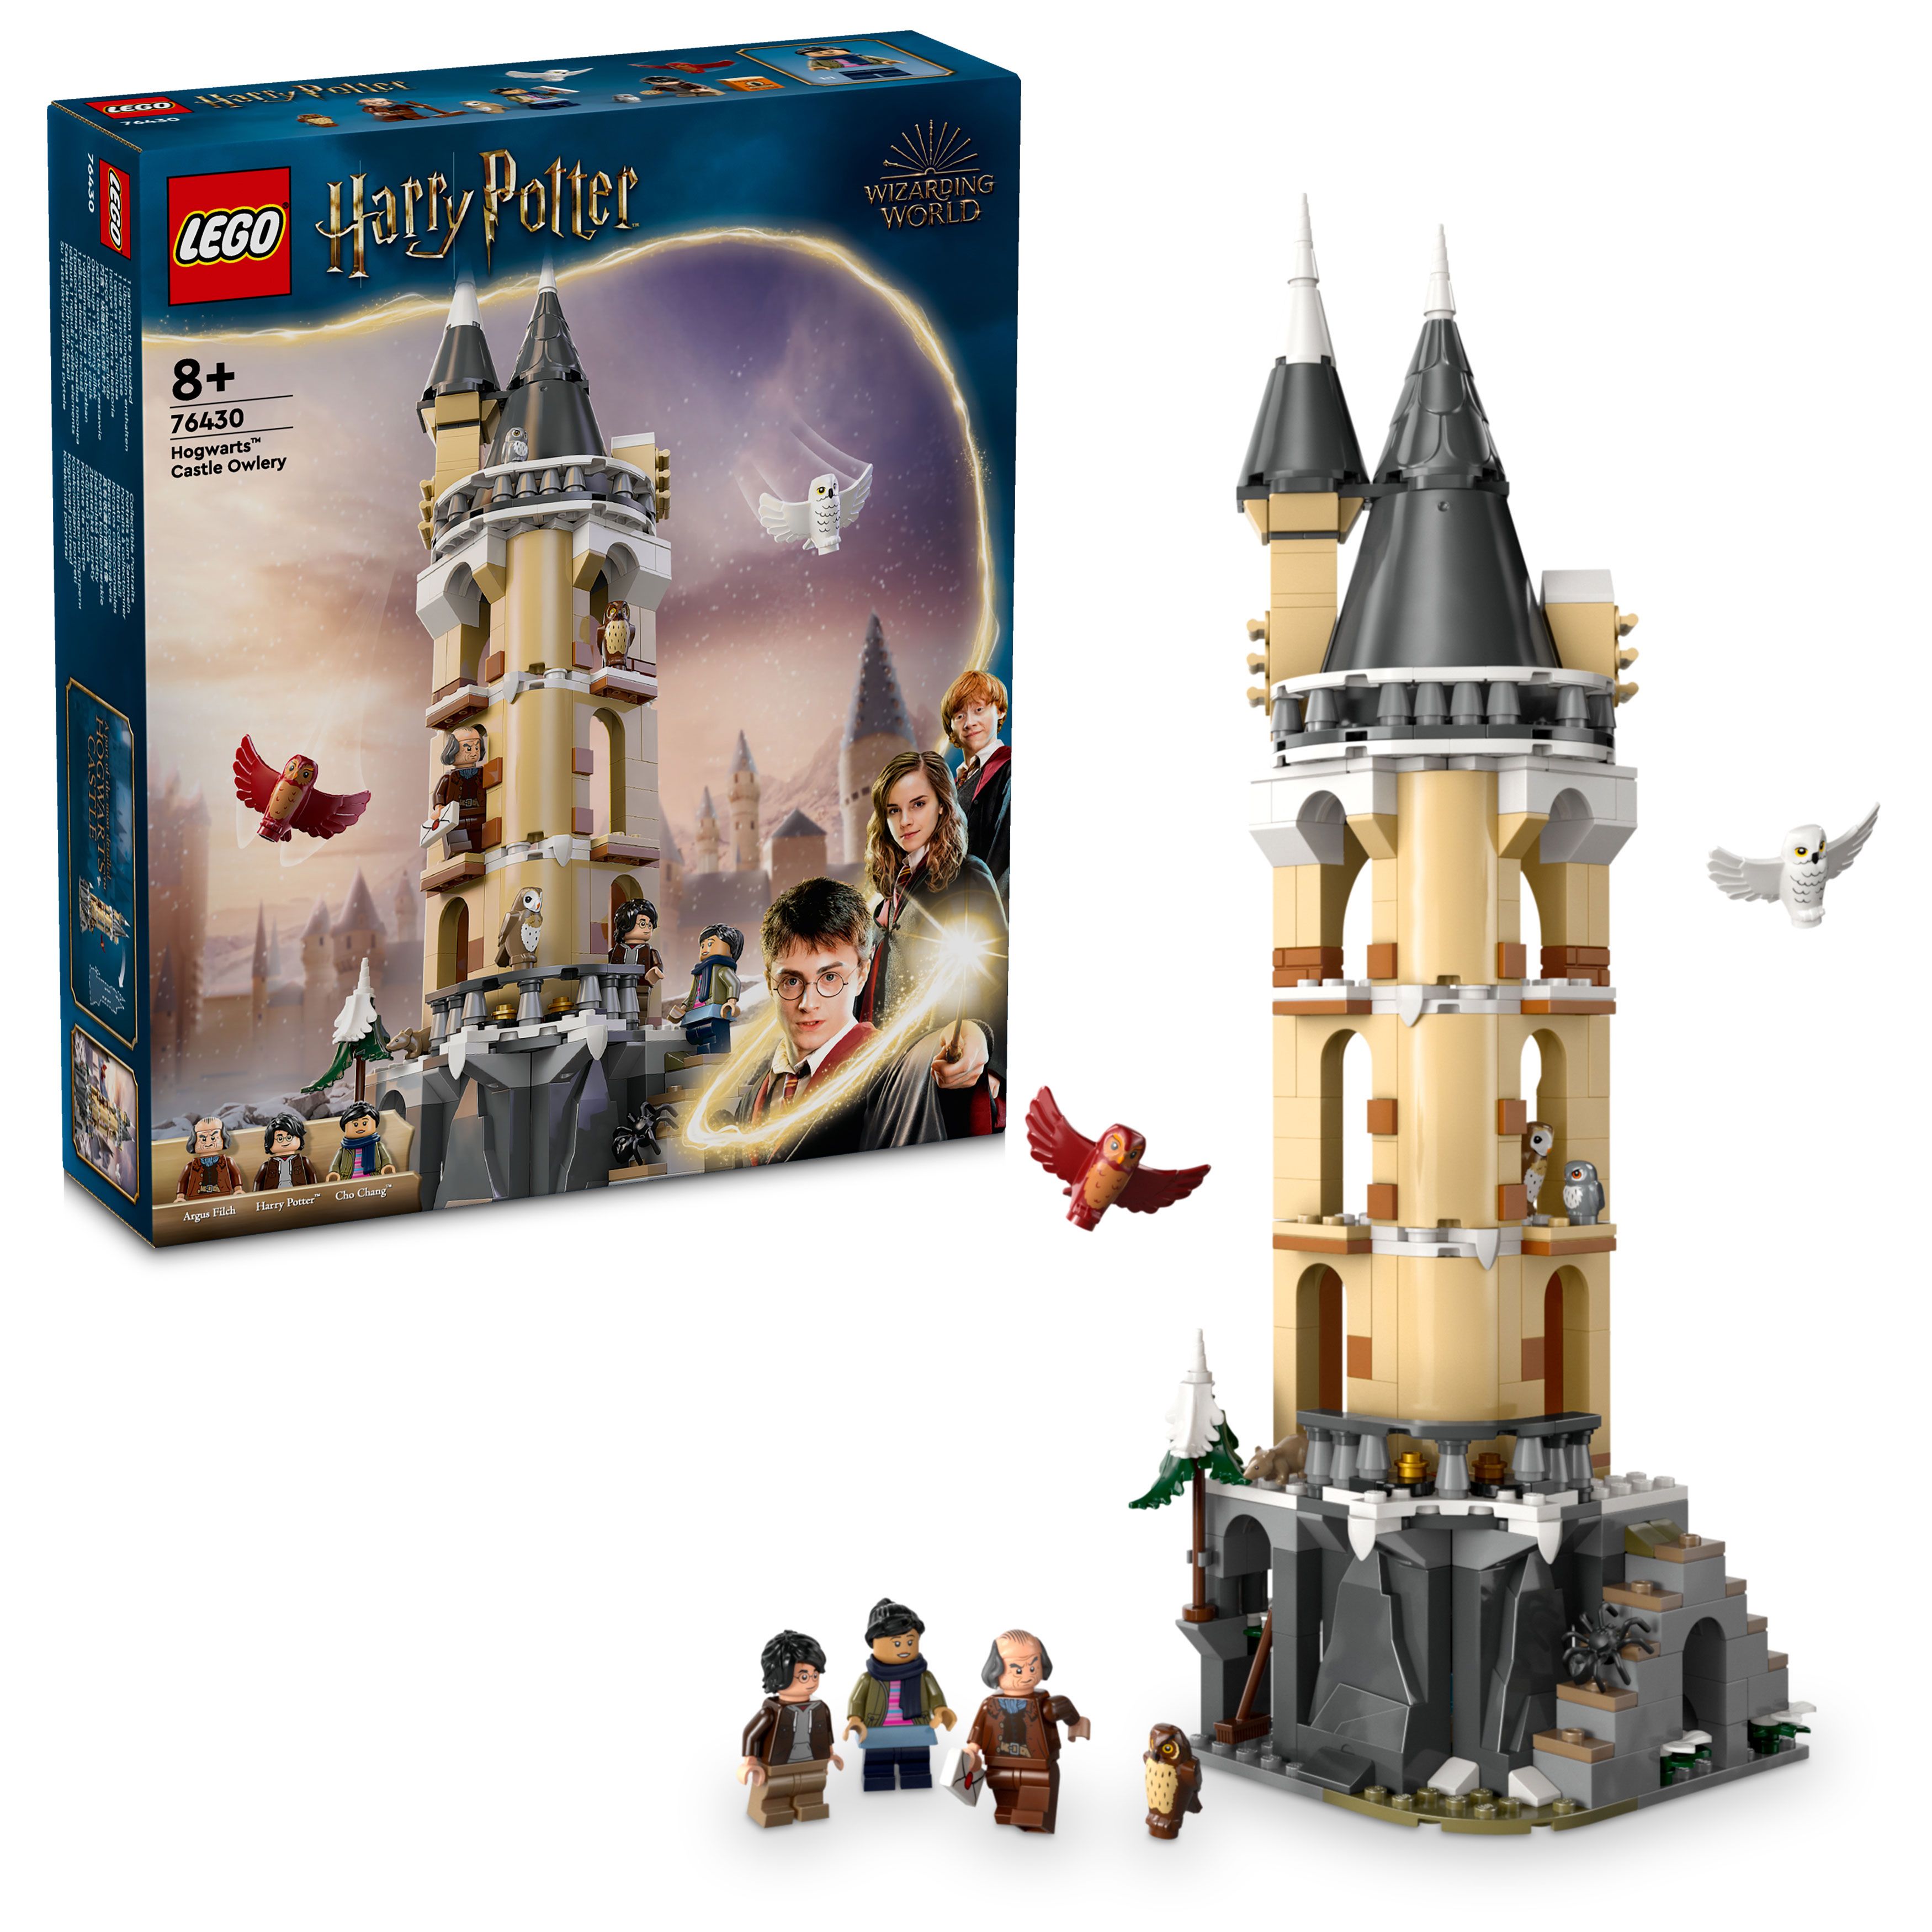 LEGO Harry Potter - Ugleriet i Galtvortborgen (76430) - Leker